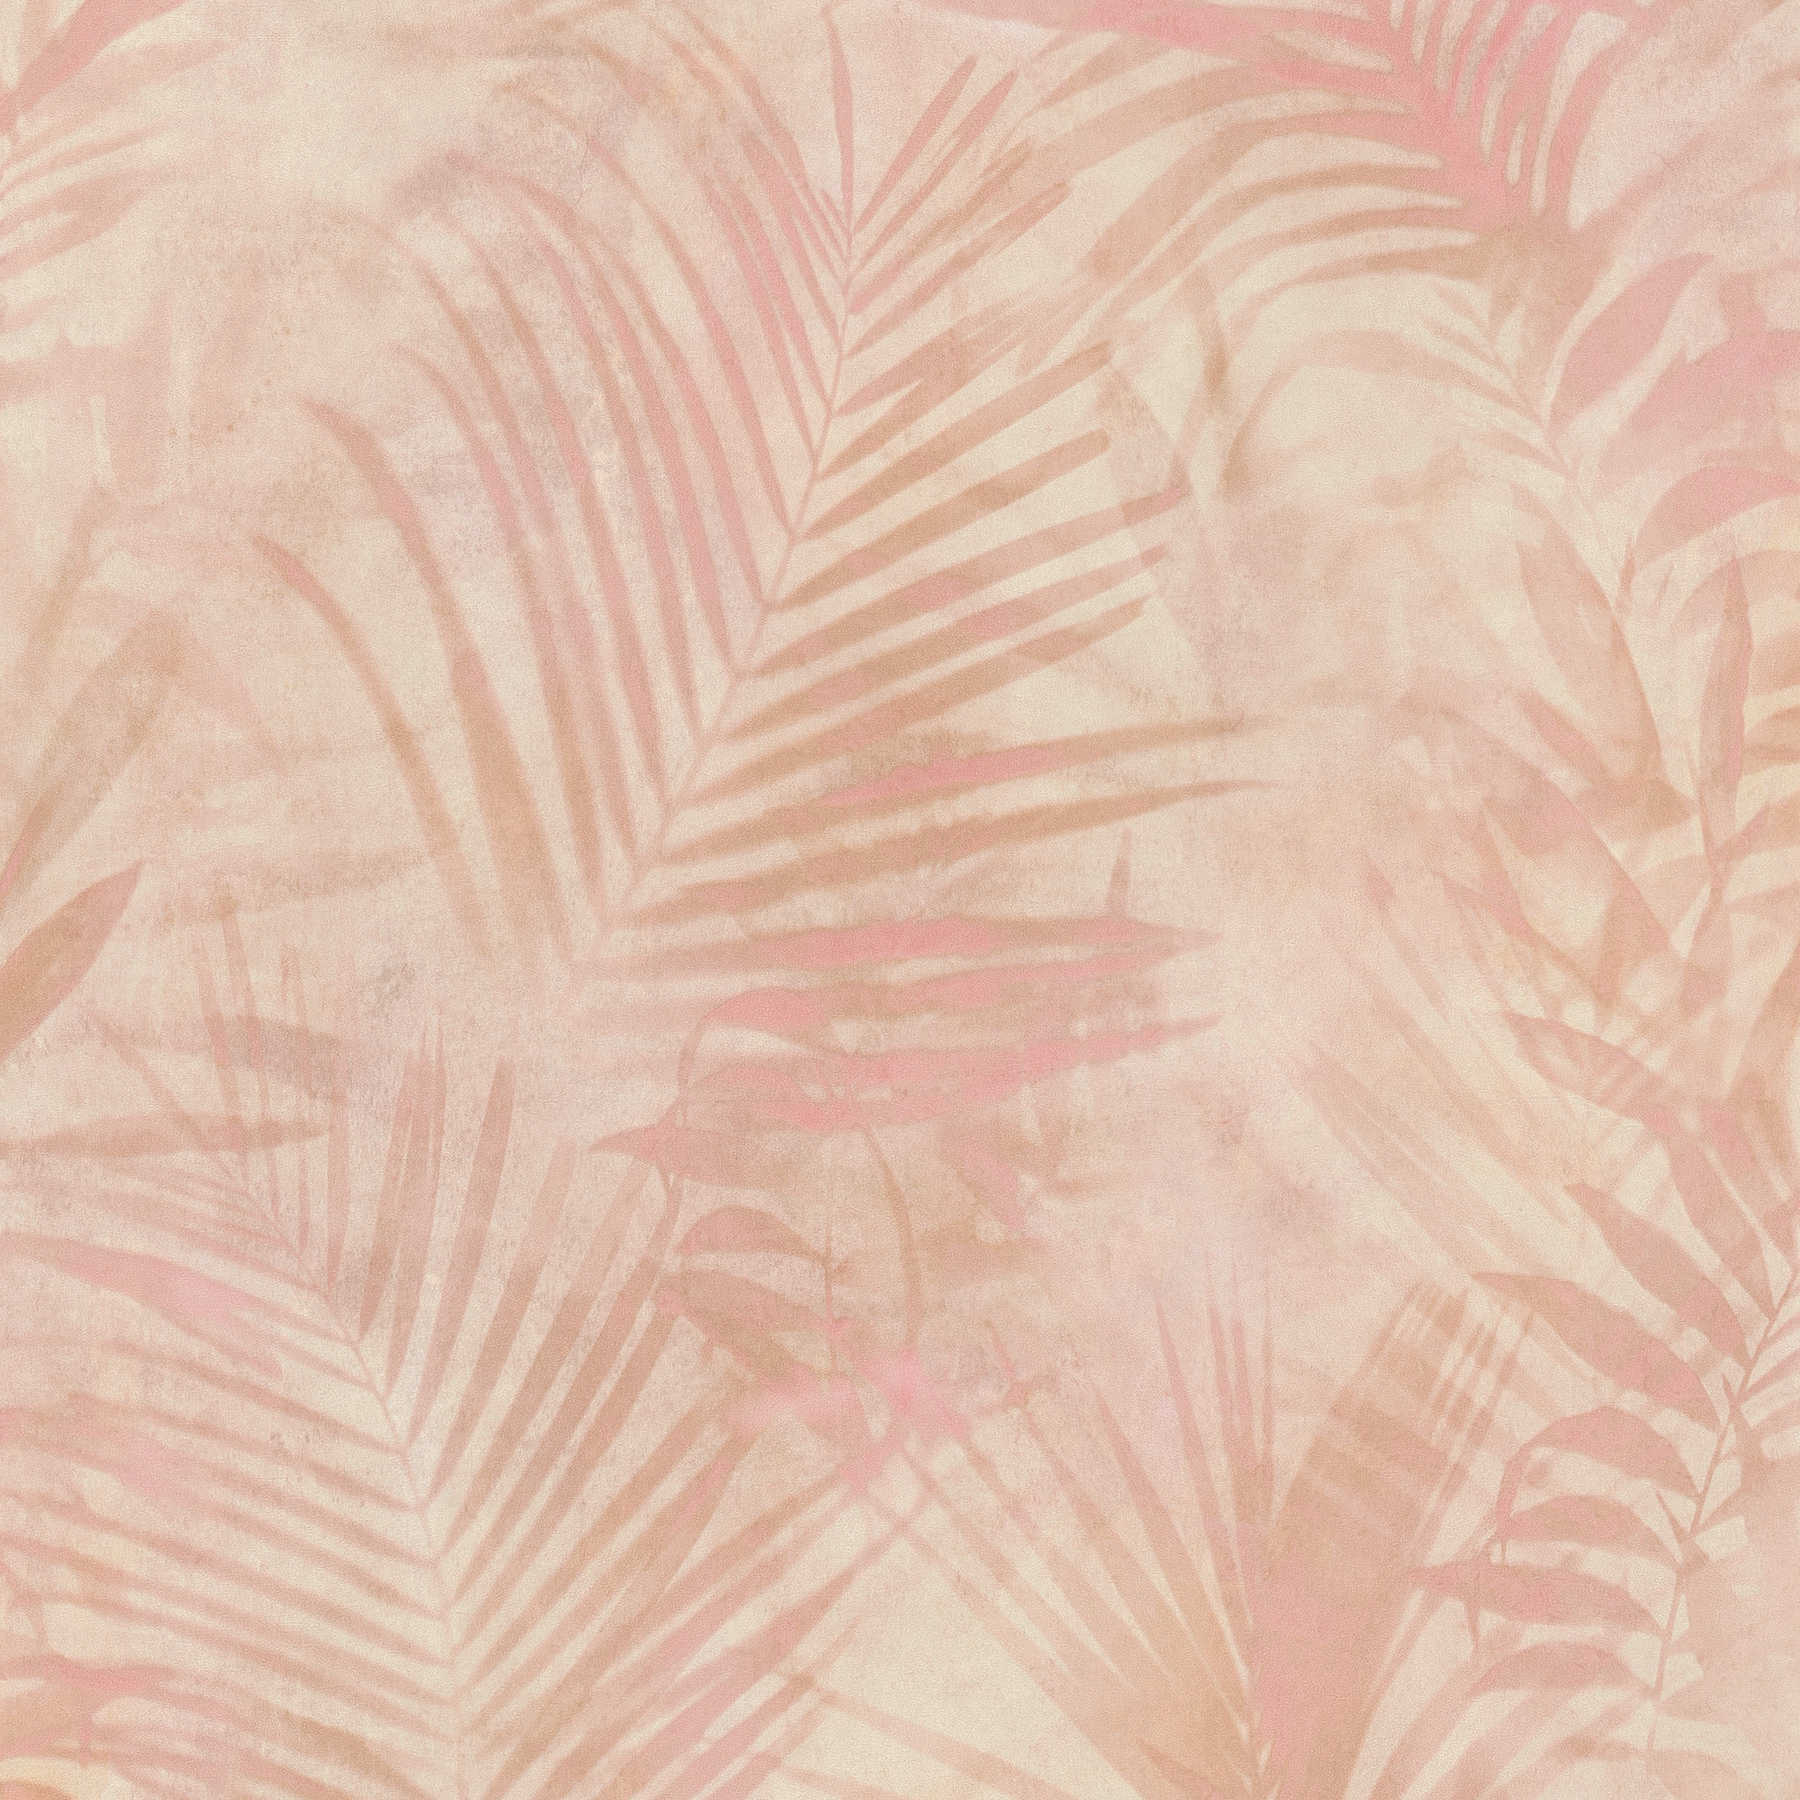 Papier peint Motif palmier en lin - rose, beige, crème
